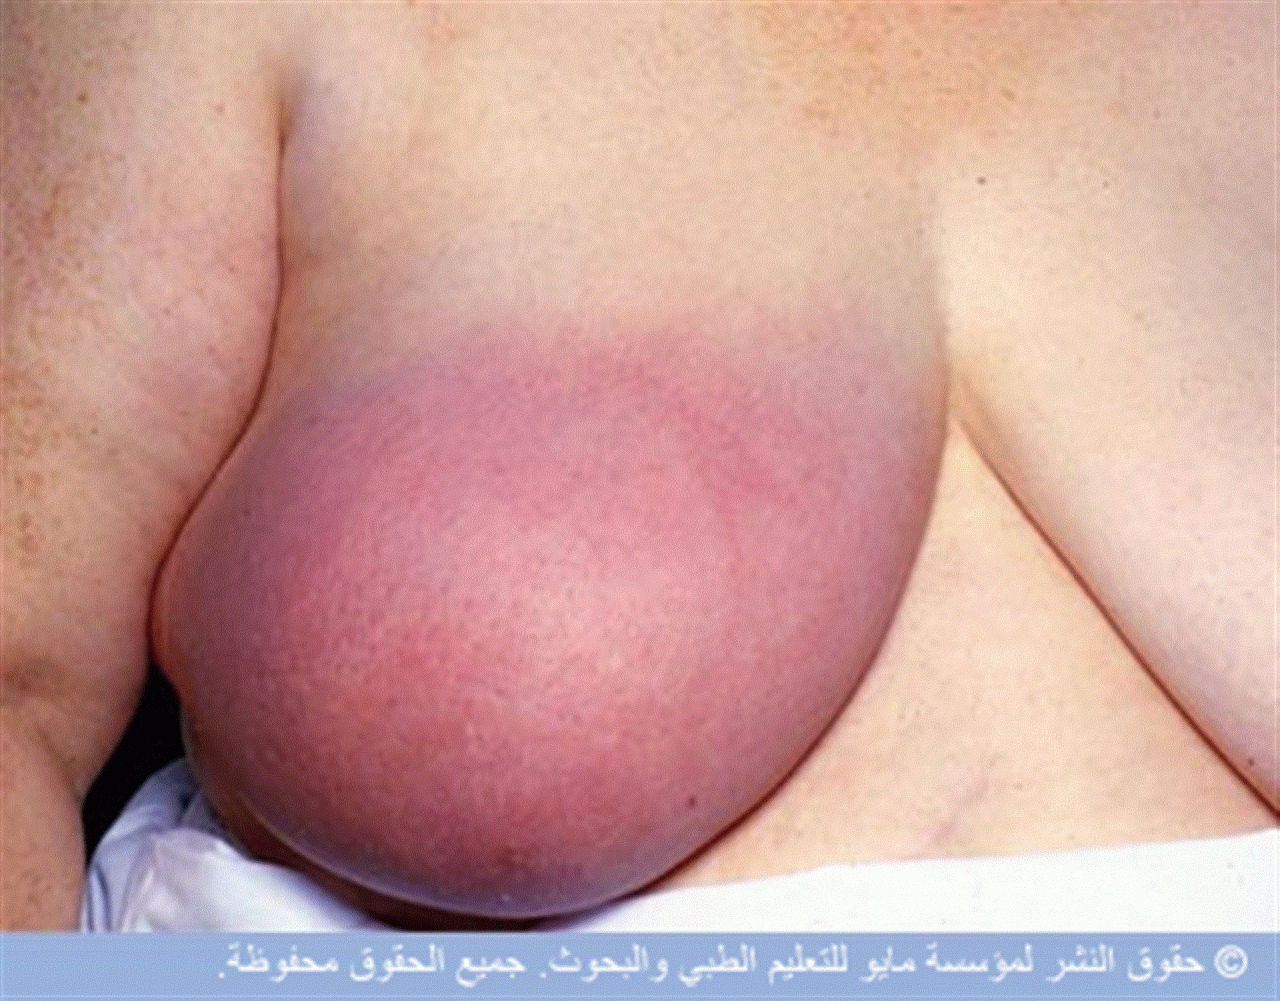 симптомы воспаления груди у женщин фото 58